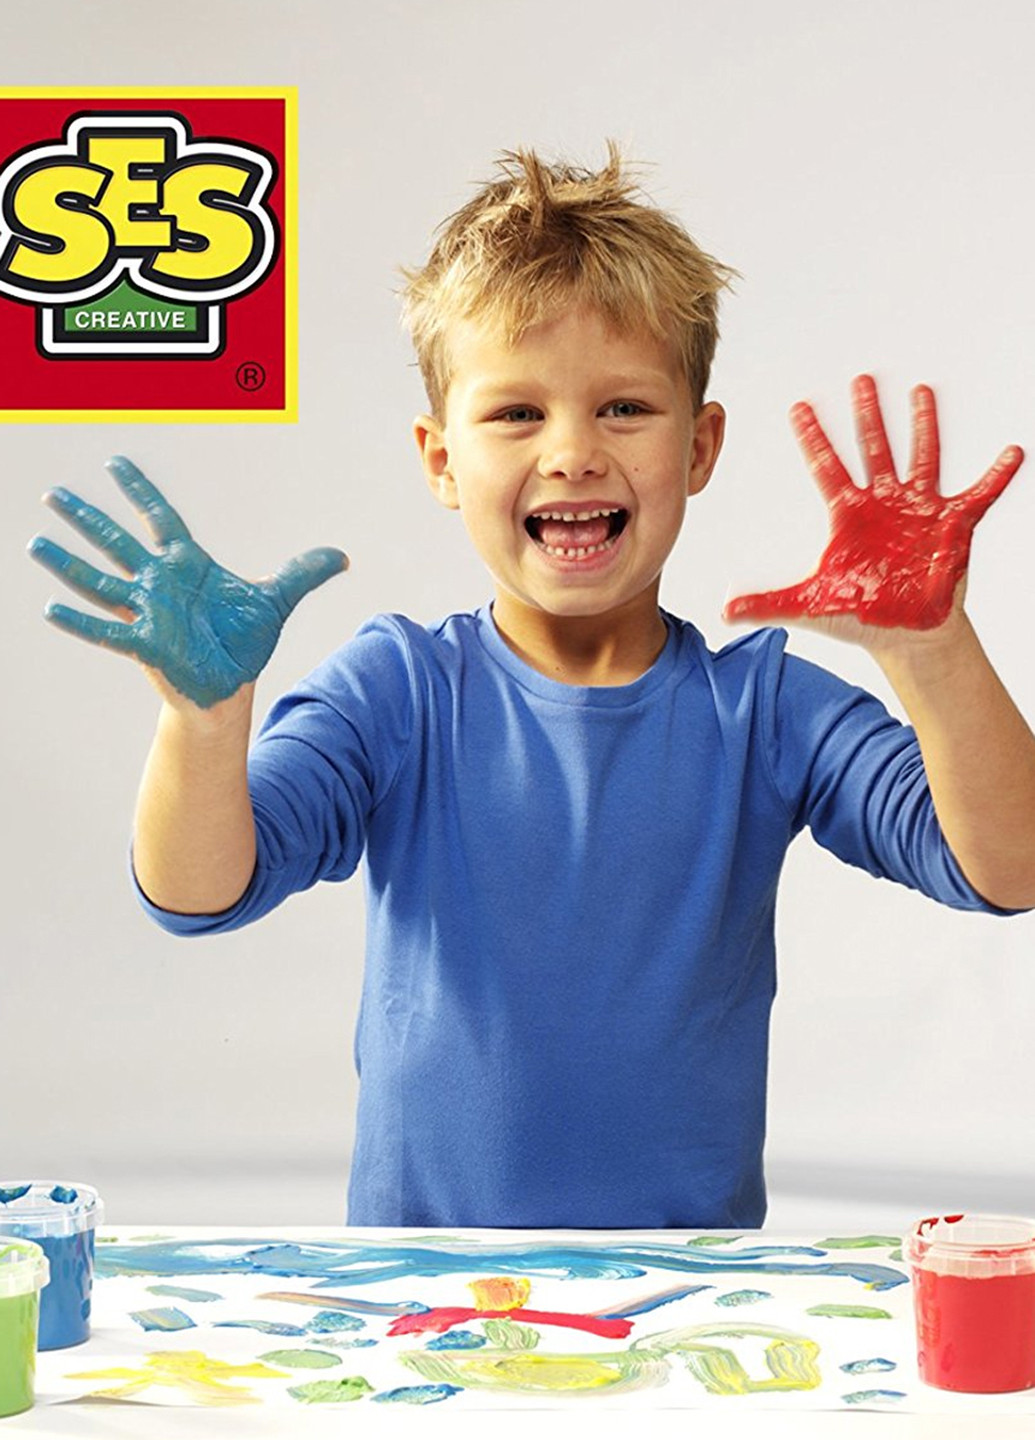 Пальчиковые краски серии "Эко" - МОИ ПЕРВЫЕ РИСУНКИ (4 цвета, в пластиковых баночках) Ses Creative (140924535)